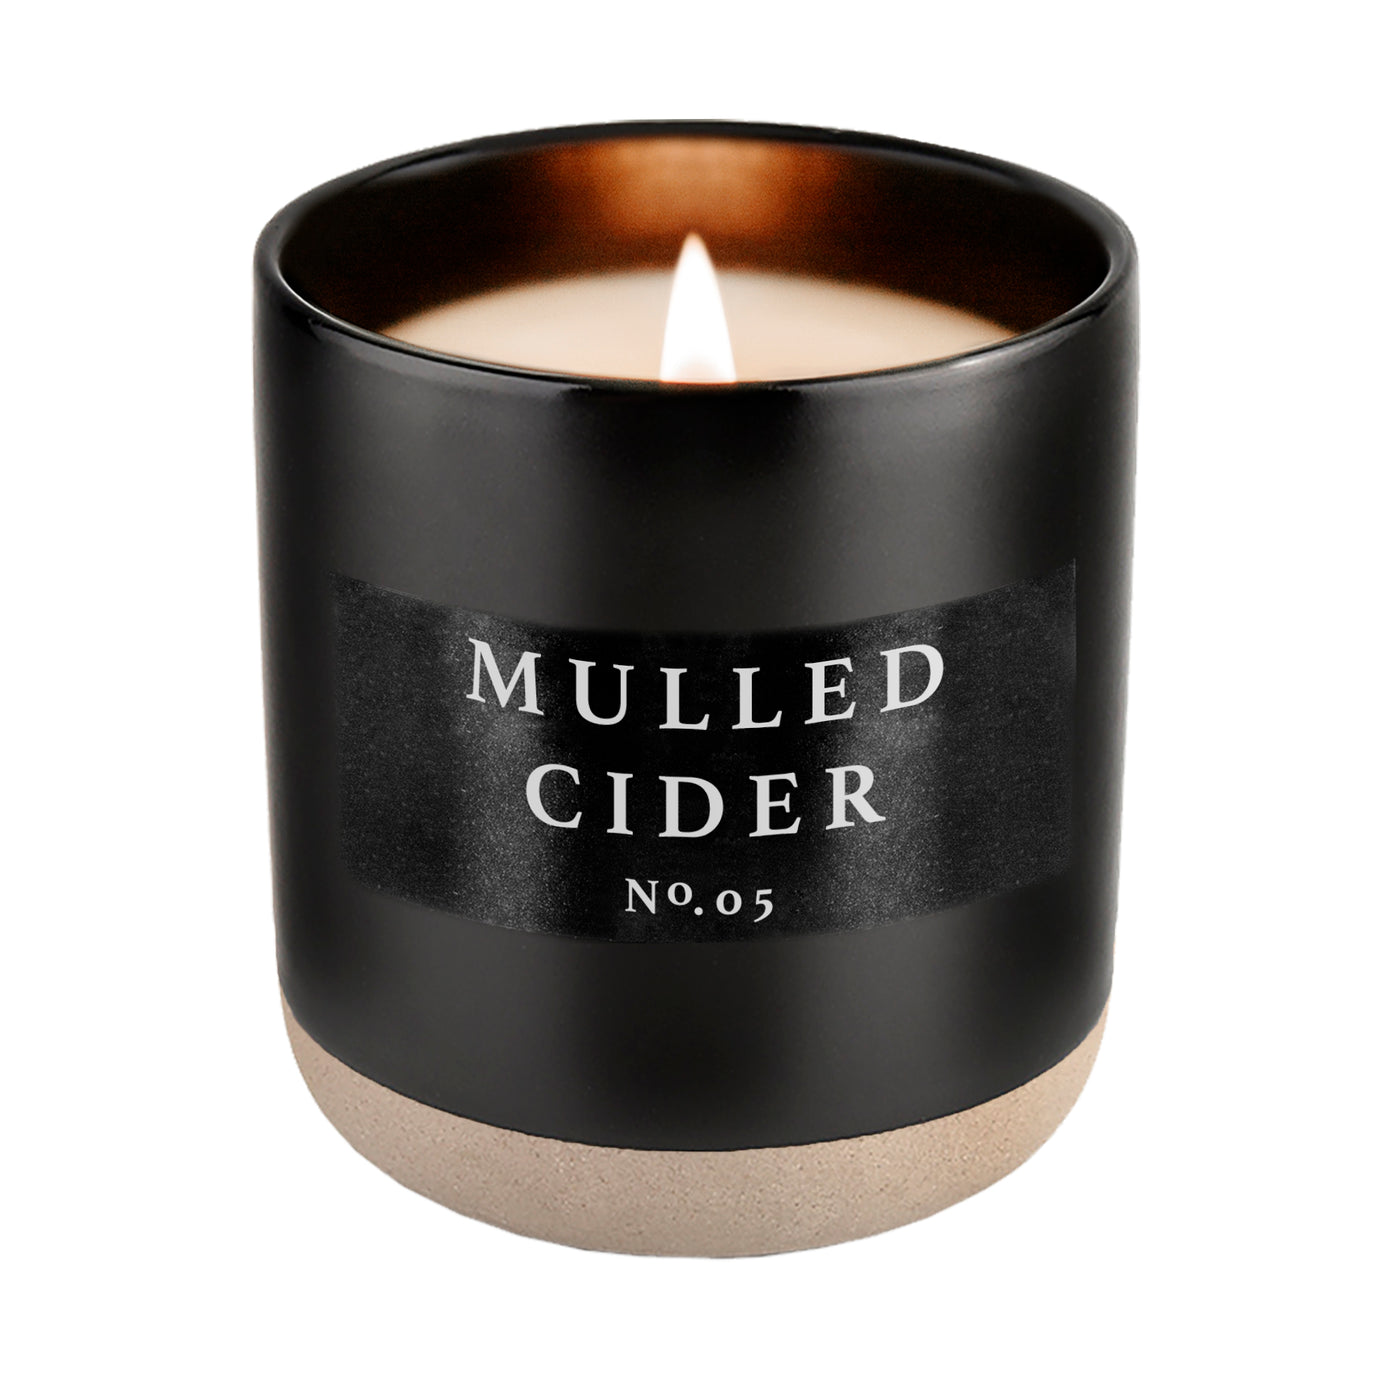 Mulled Cider Soy Candle - Black Stoneware Jar - 12 oz